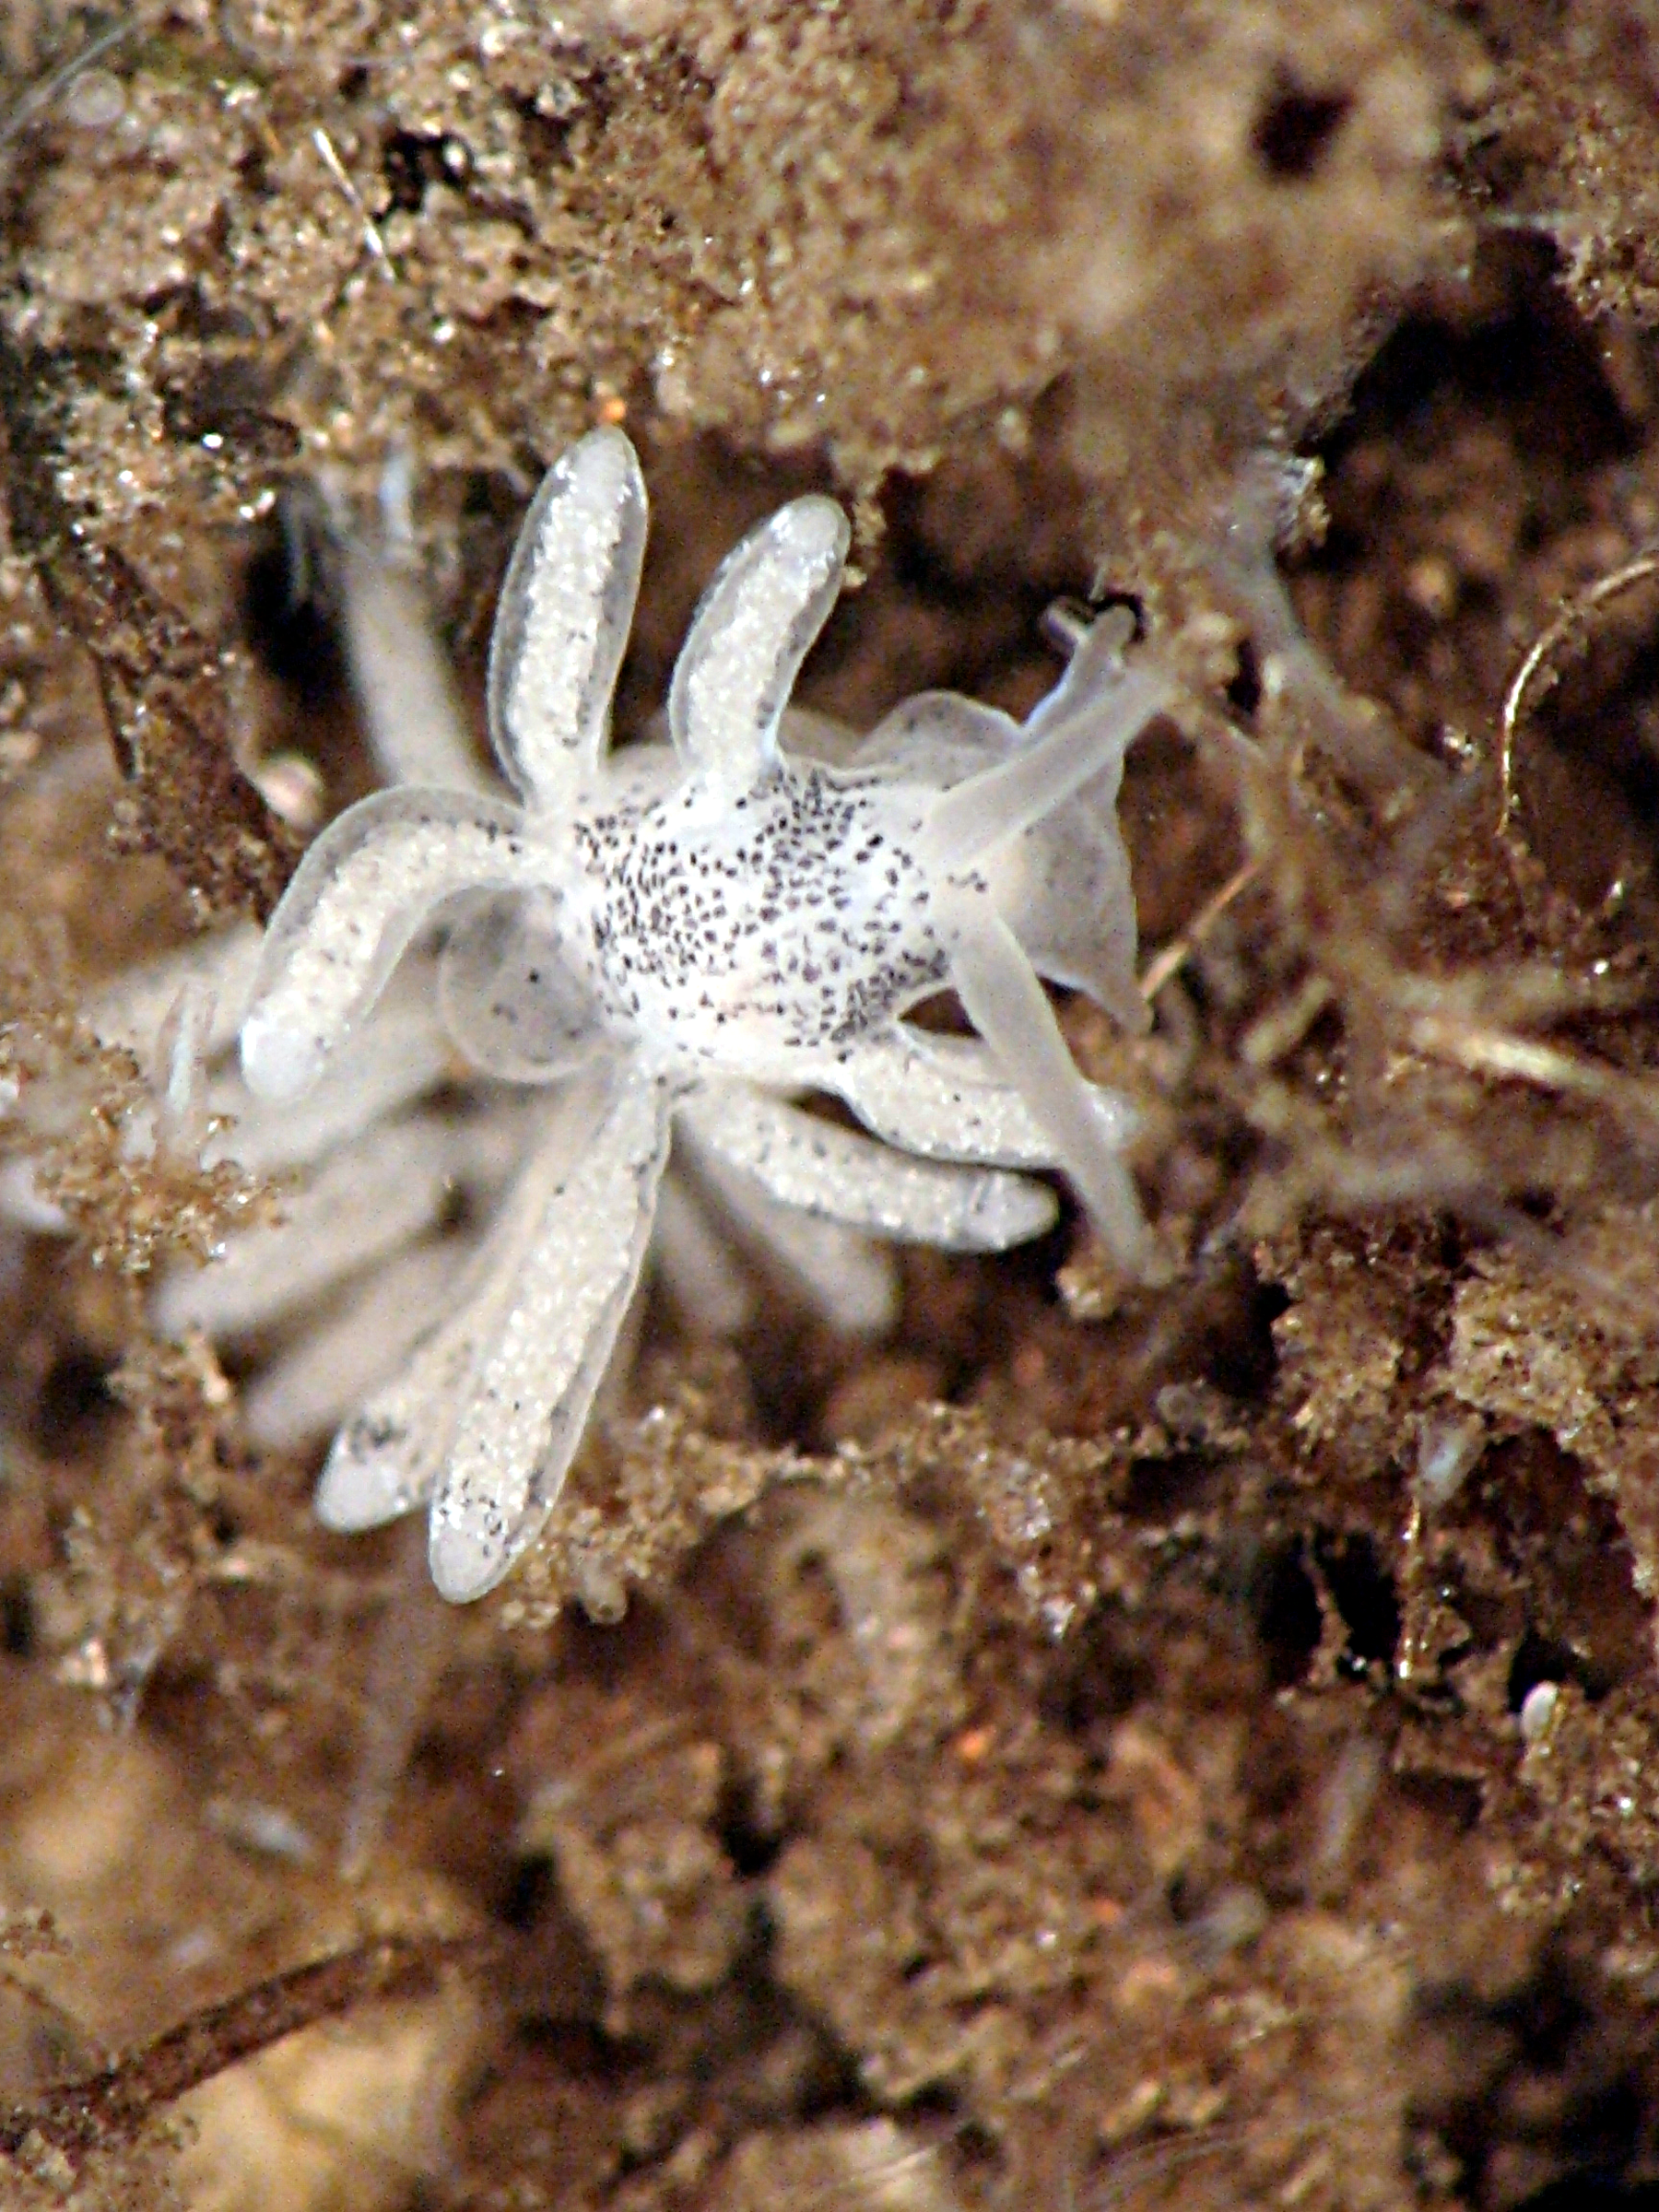 A Dusky Sea Slug (Stiliger fuscatus) with 15 visible appendages.